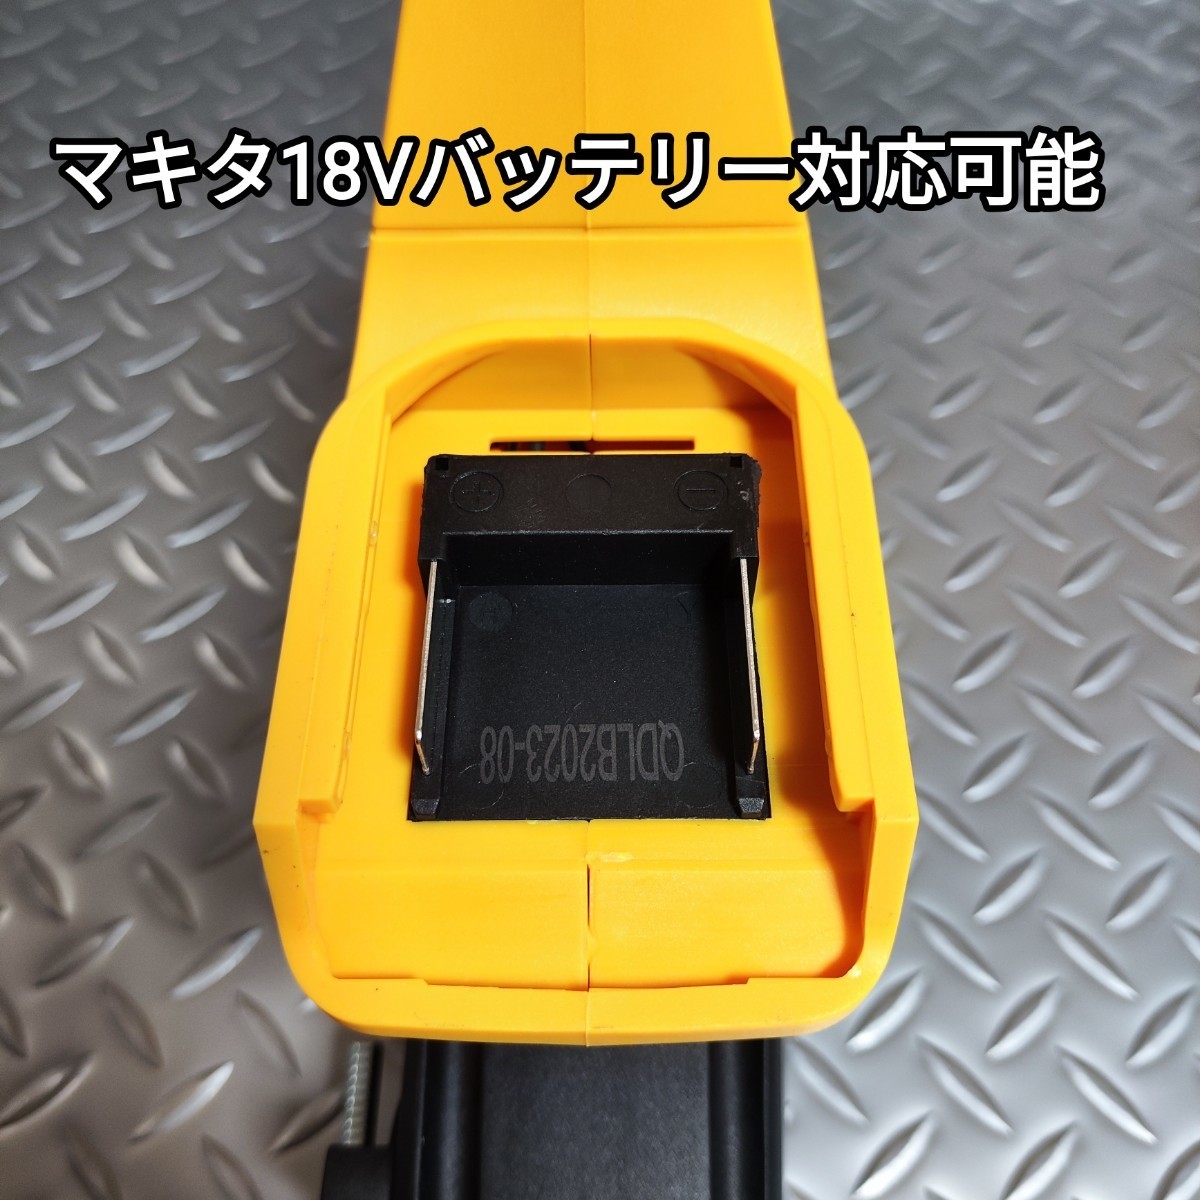 【黄色】ハンマードリル マキタ 互換品 18V はつり 電動ハンマー_画像7